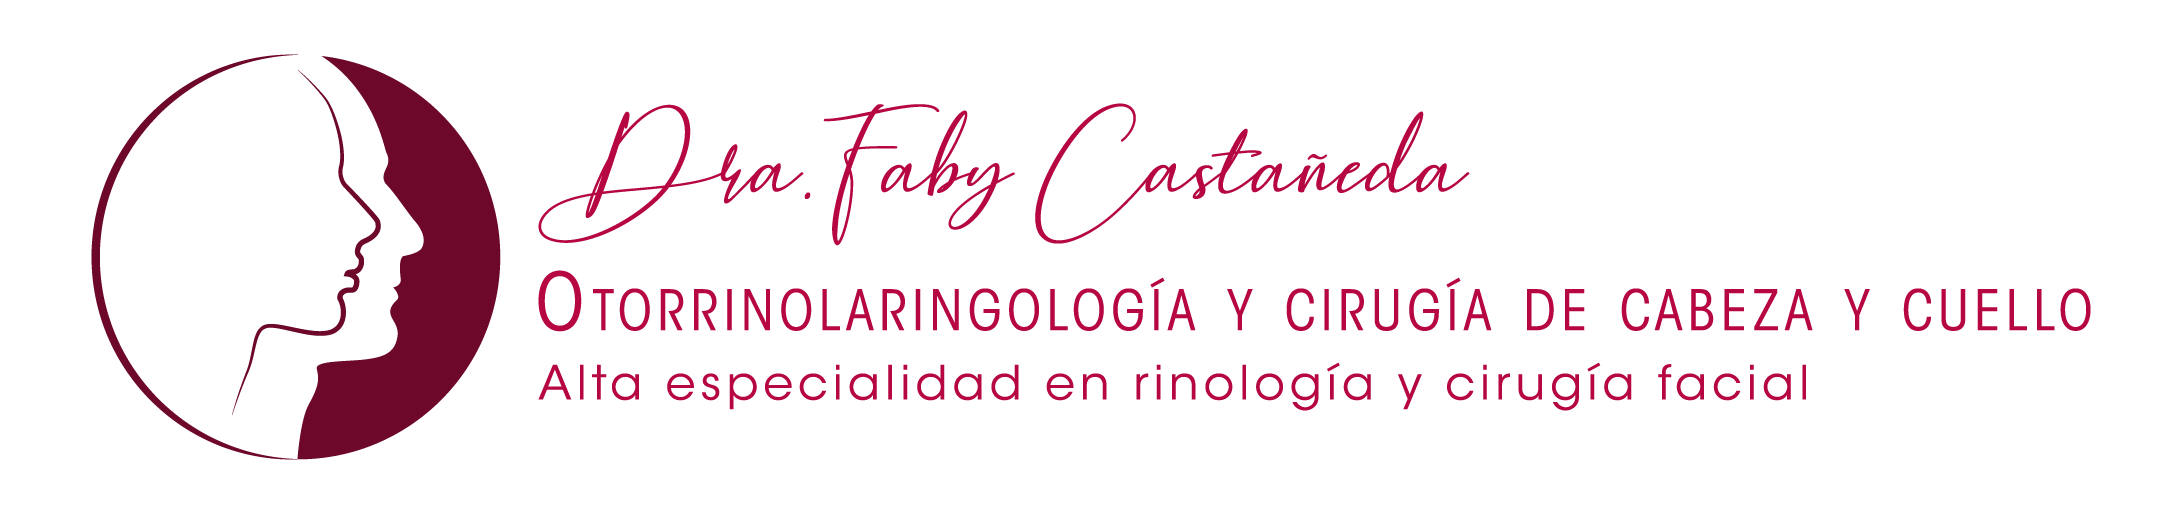 Dra. Fabiola Castañeda